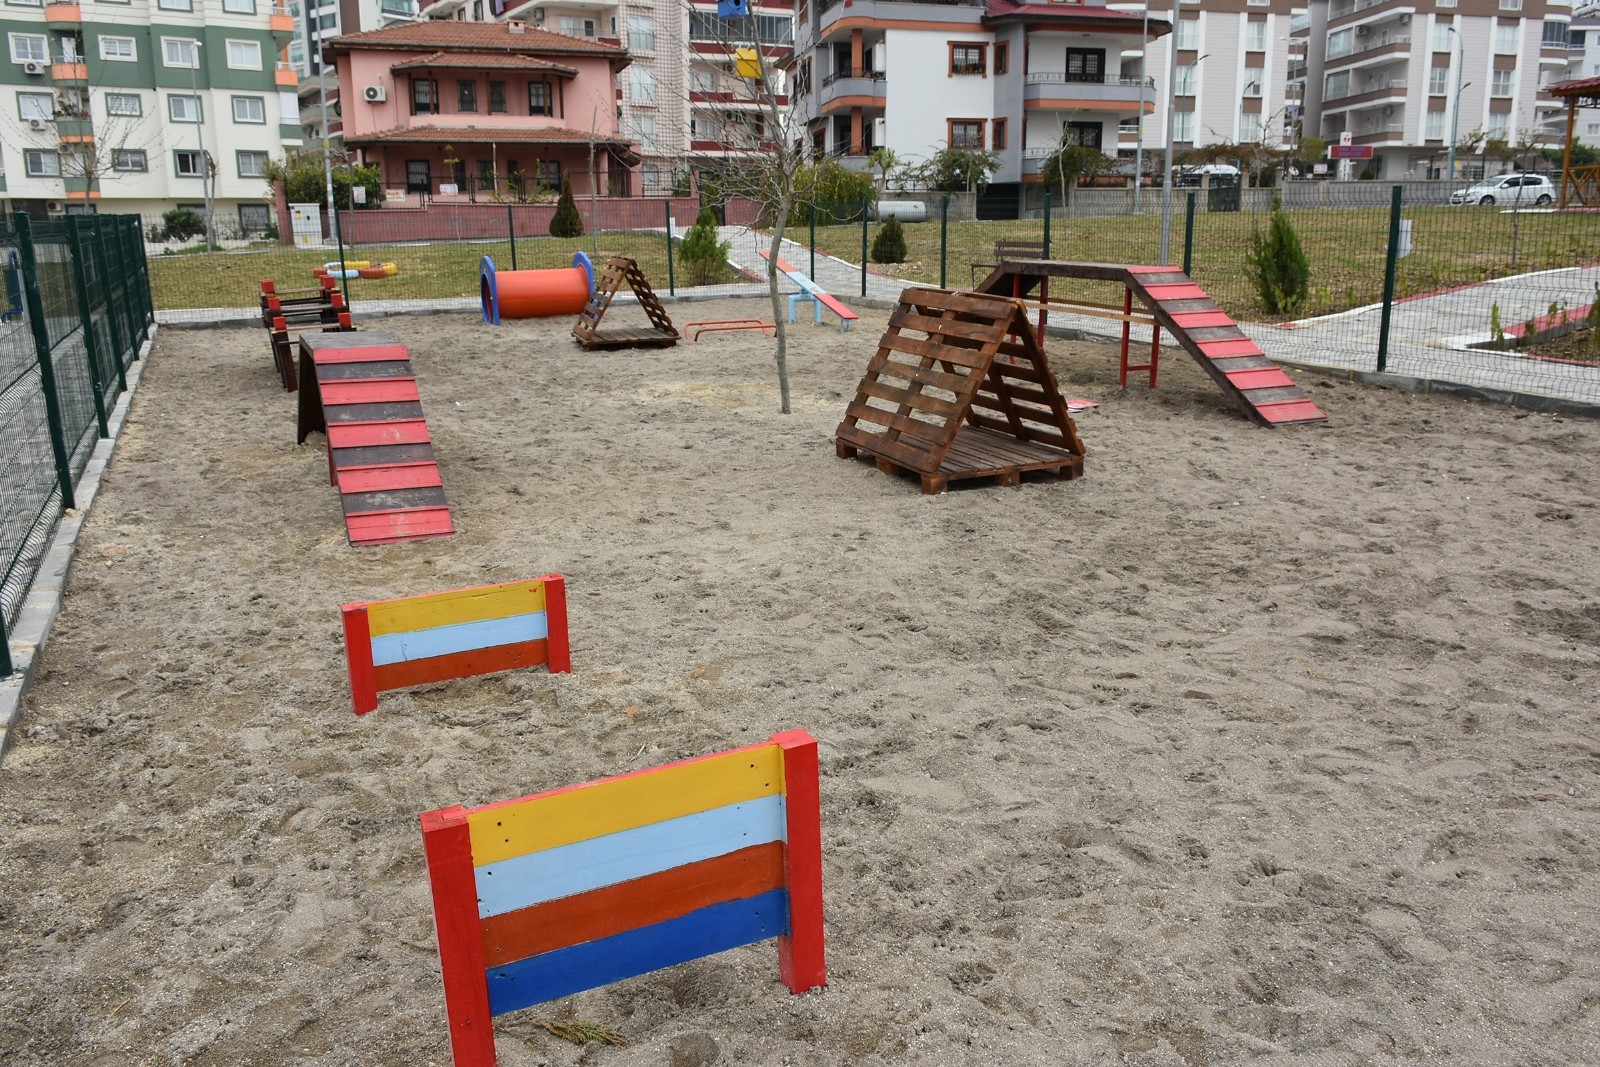 Tarsus’ta ‘Dost Patiler Eğitim ve Oyun Parkı’ açıldı